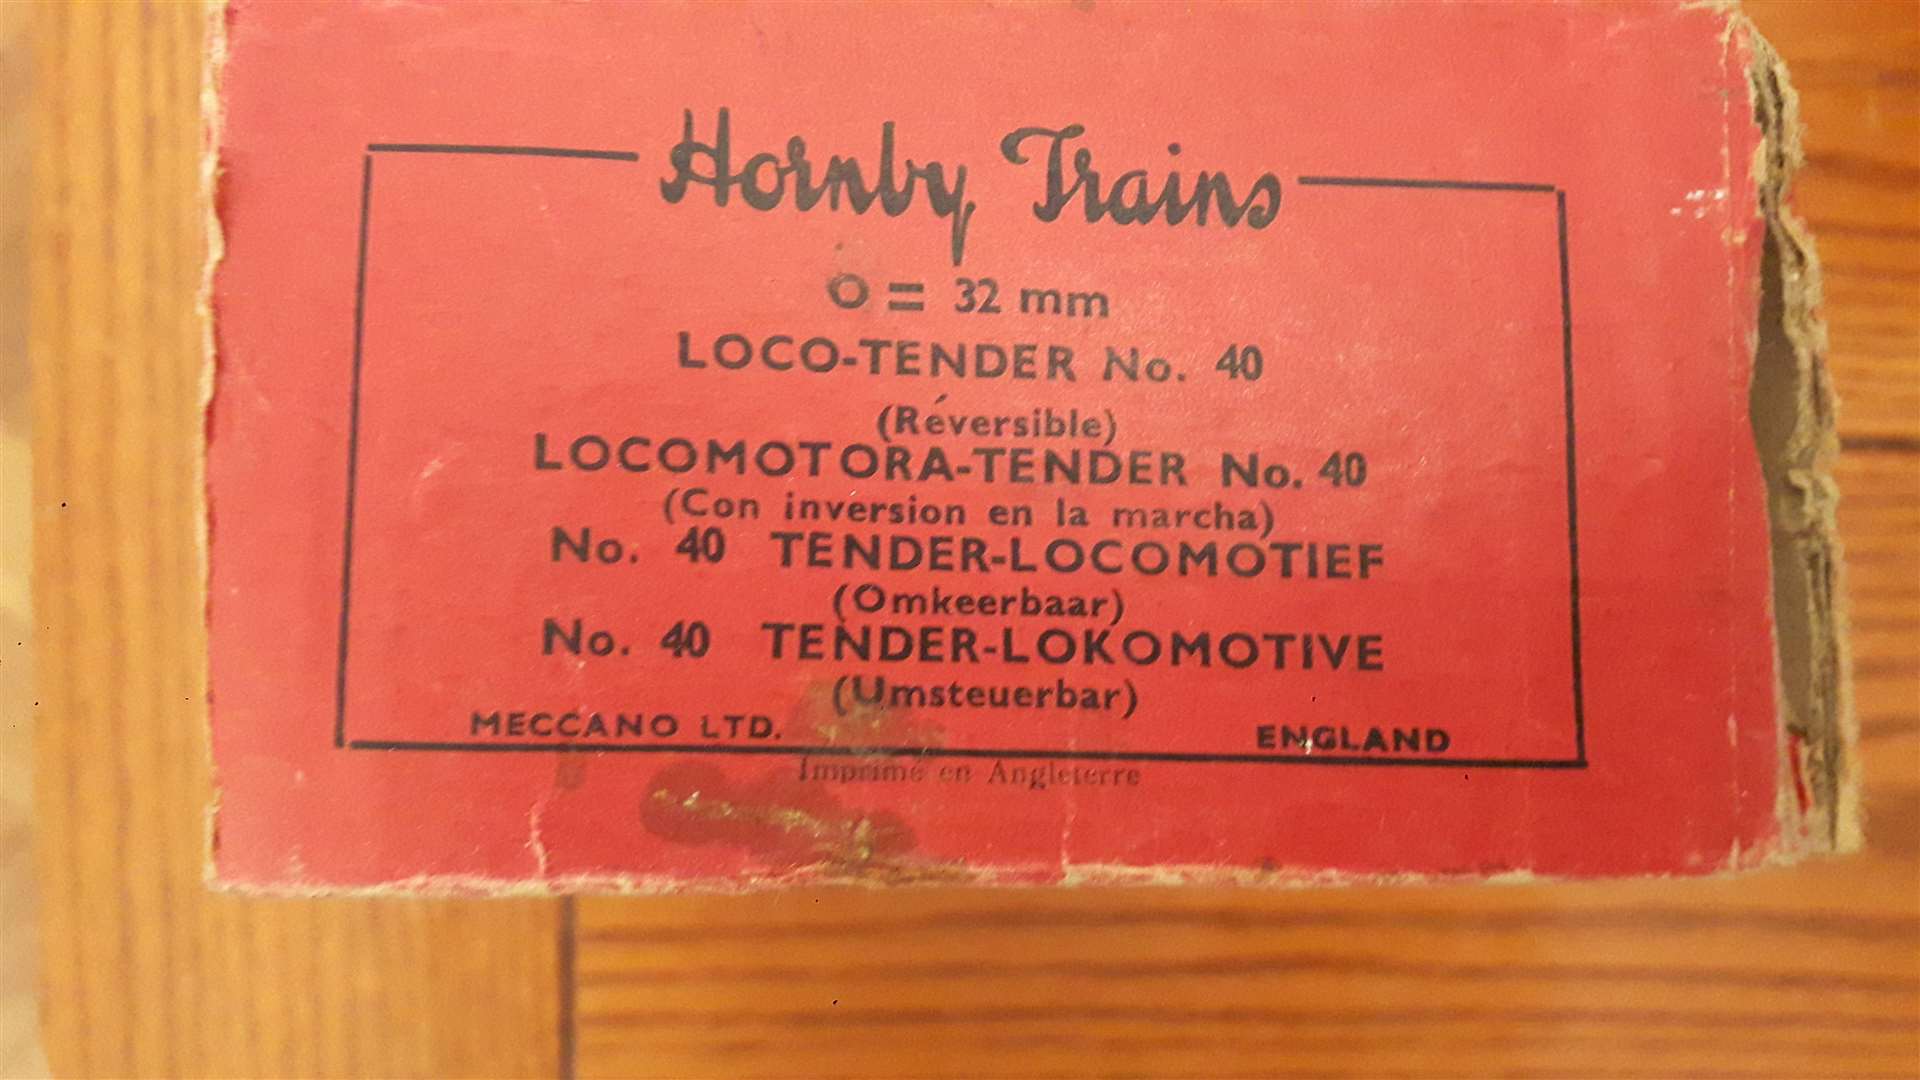 A genuine Hornby model box